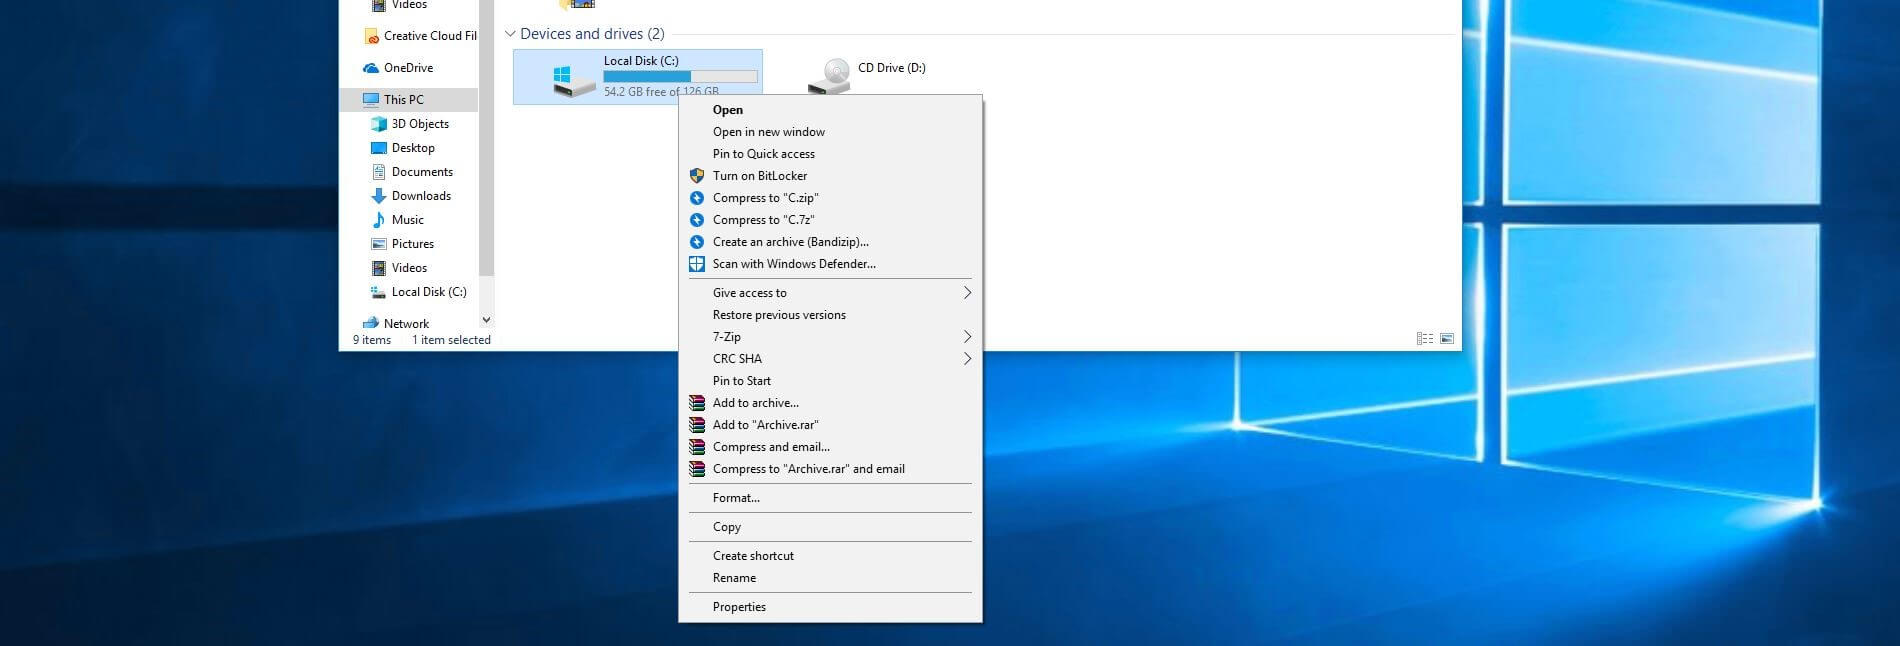 Panoramica su dispositivi e unità in Windows 10